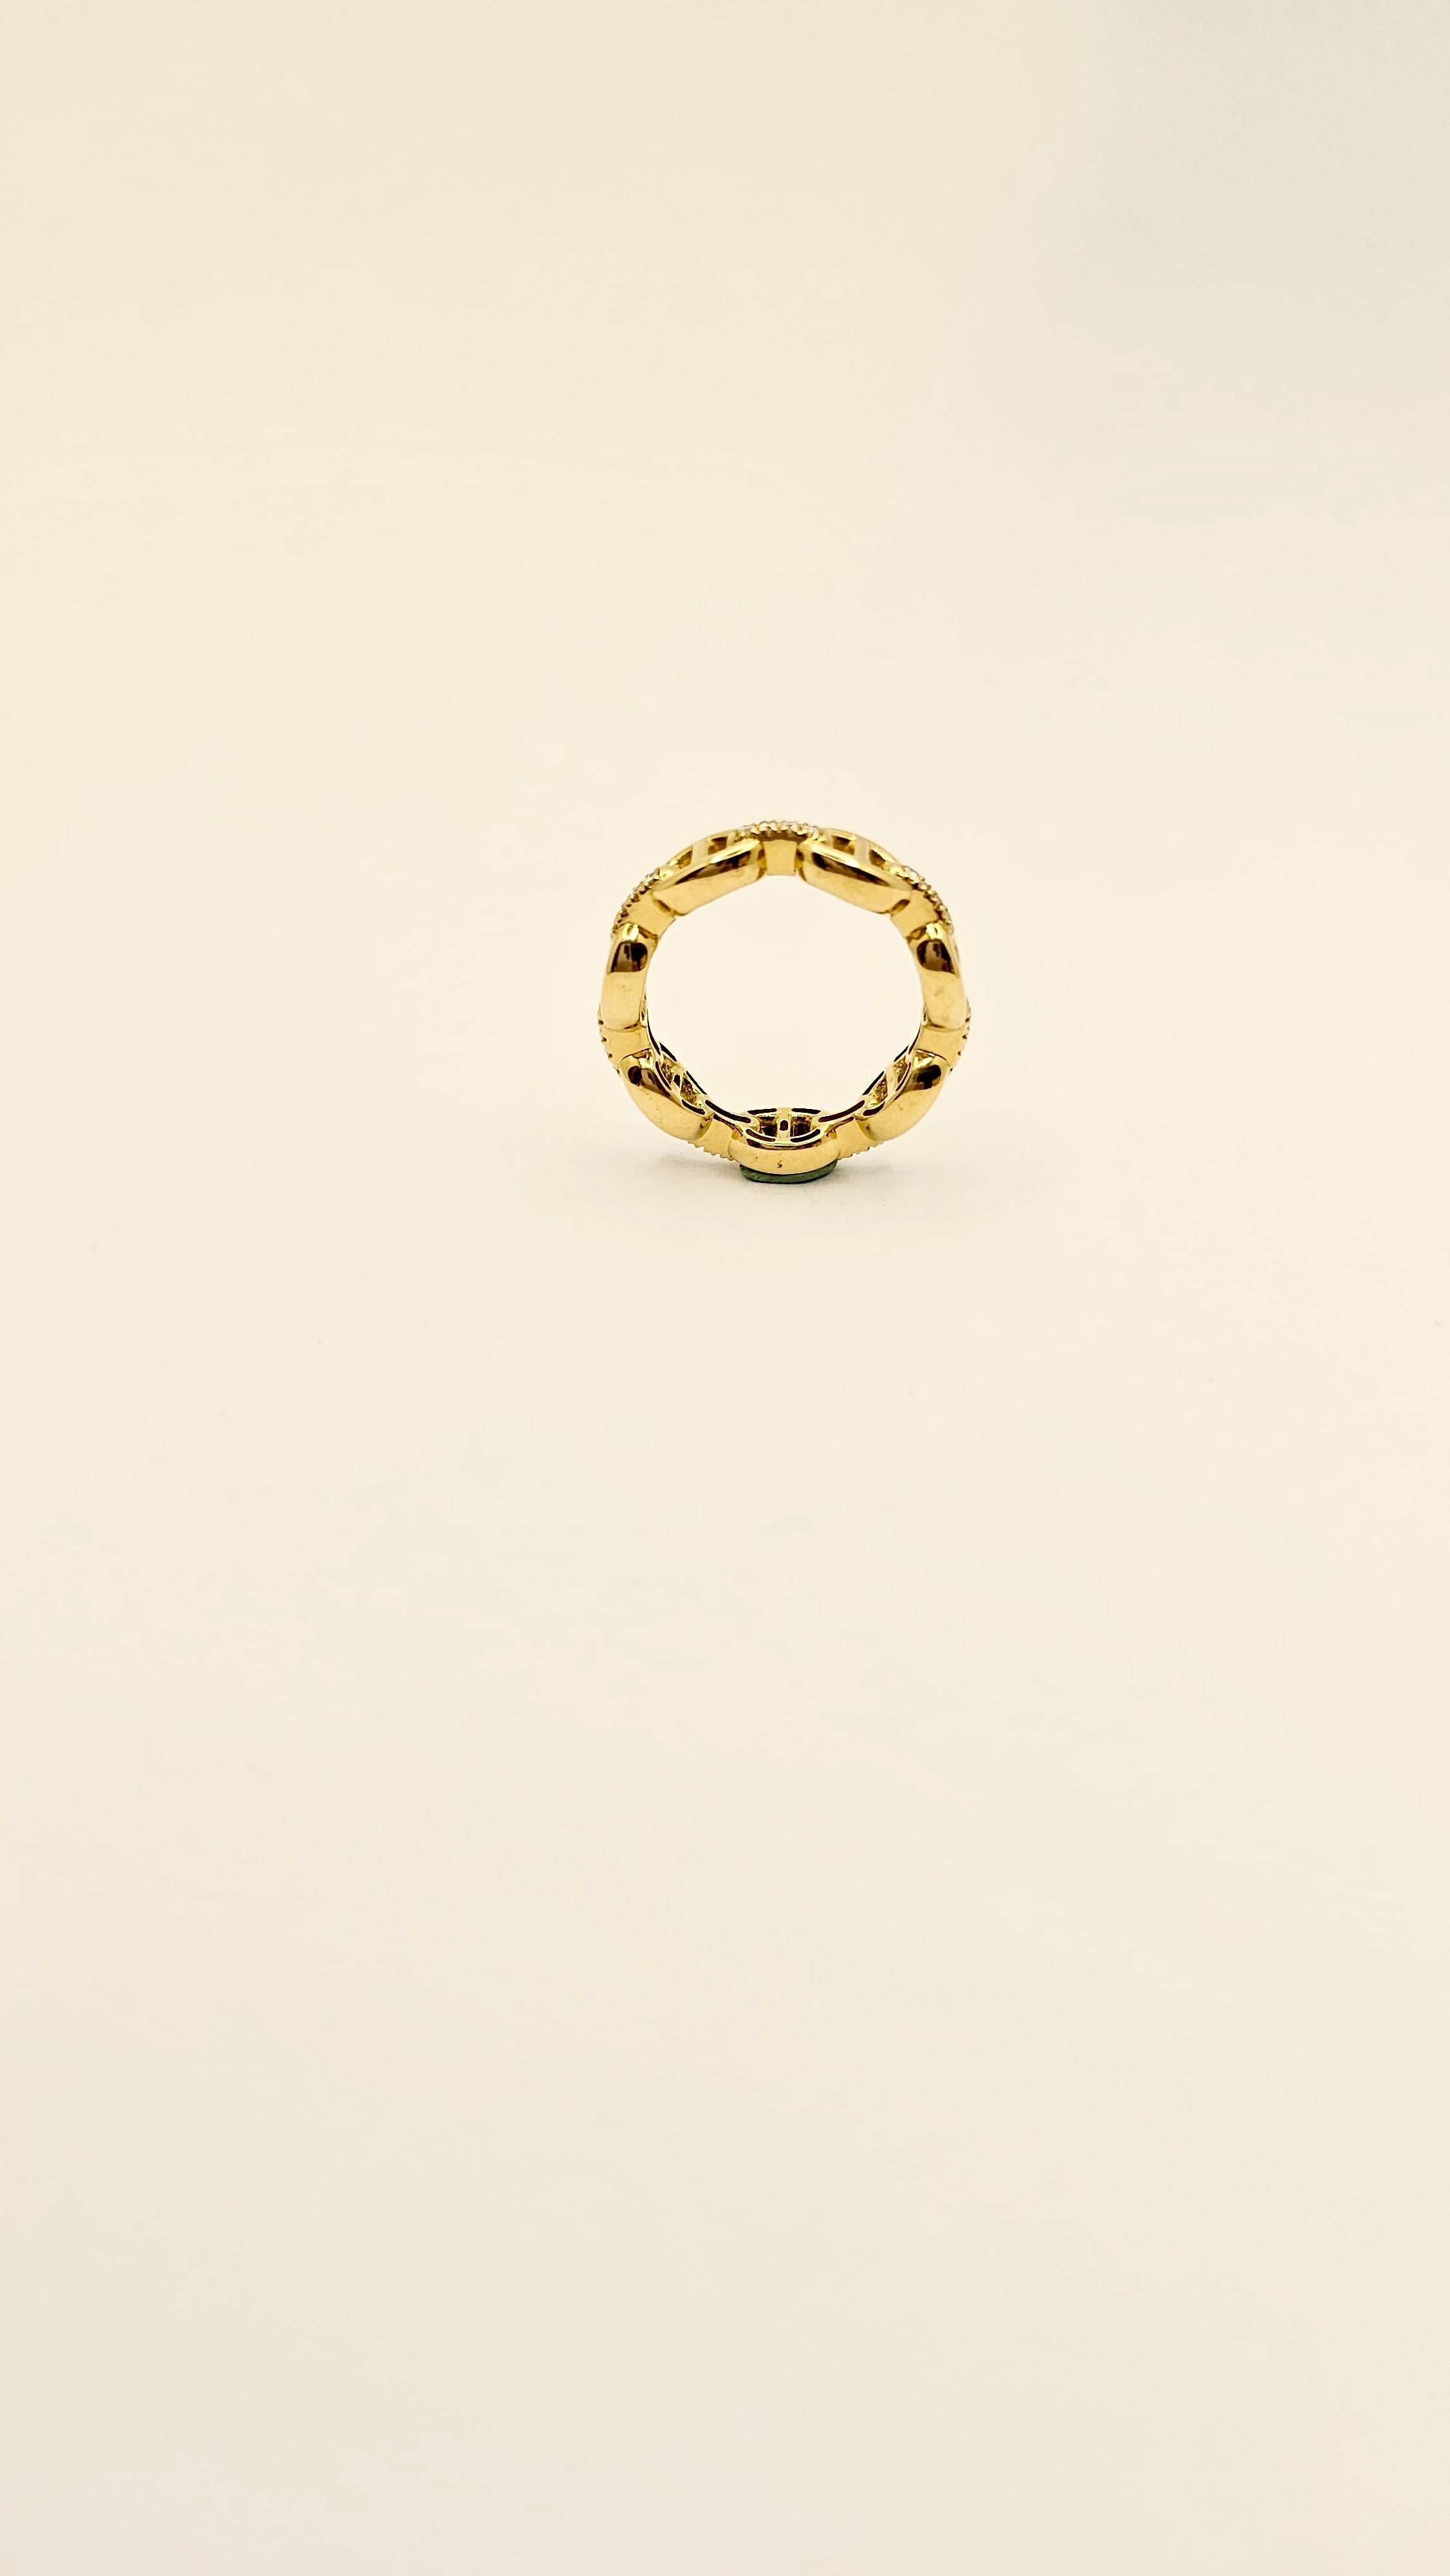 Ein Ring aus massivem 18-karätigem Gelbgold mit einem Design aus den 1960er Jahren.
Dieser Ring besteht aus einem starren Schiffsnetz, das auch als Ankernetz bezeichnet wird.
Jedes Glied ist mit einer Klammer aus Diamanten im Brillantschliff mit